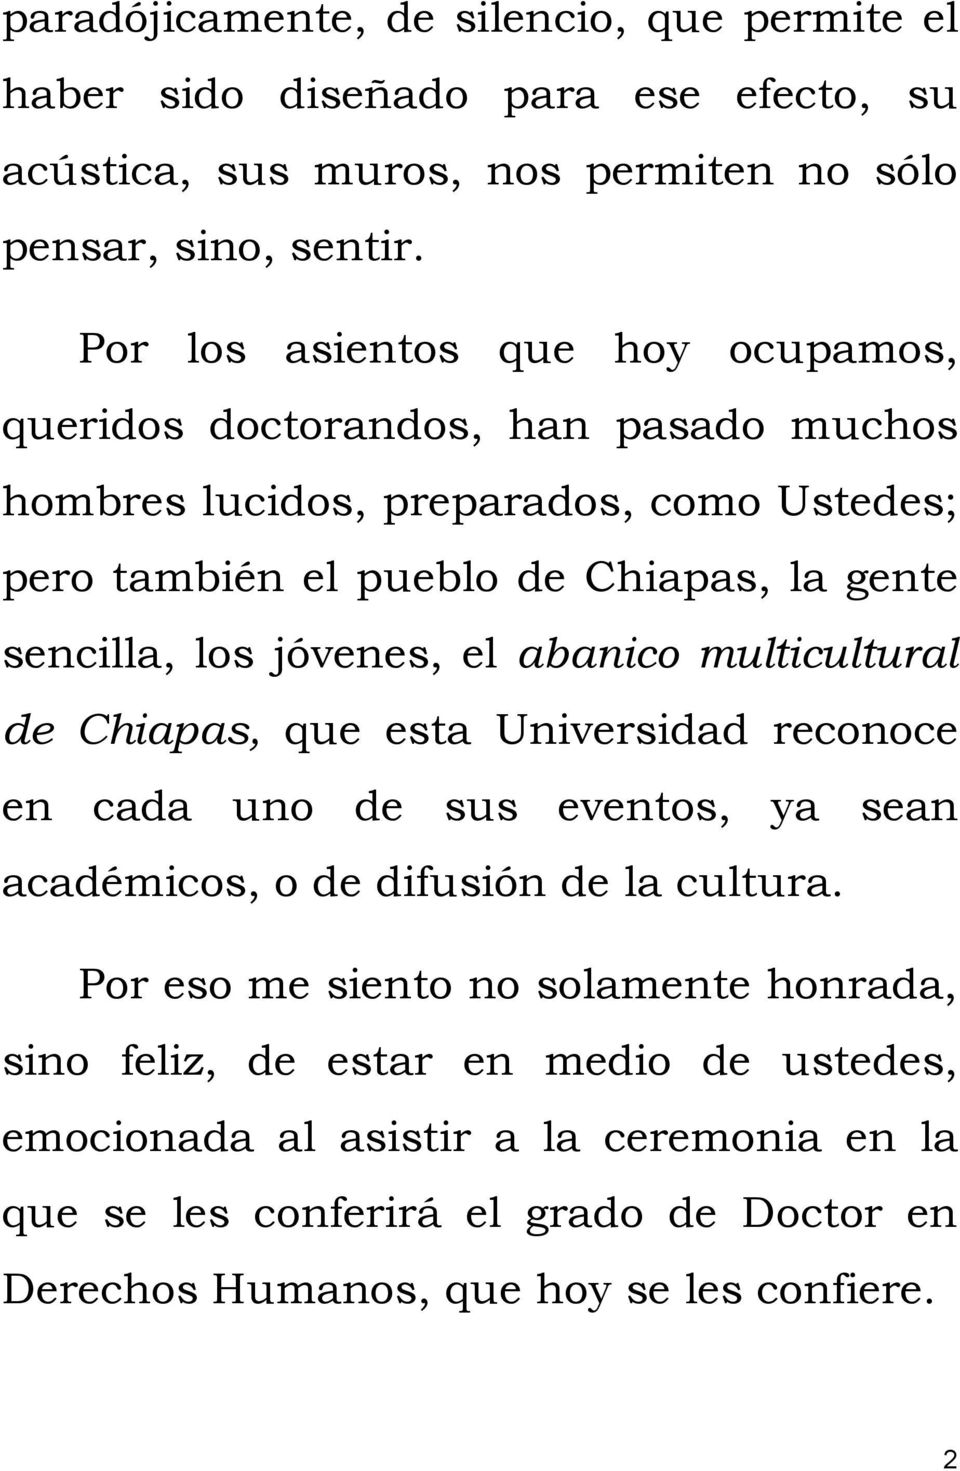 los jóvenes, el abanico multicultural de Chiapas, que esta Universidad reconoce en cada uno de sus eventos, ya sean académicos, o de difusión de la cultura.